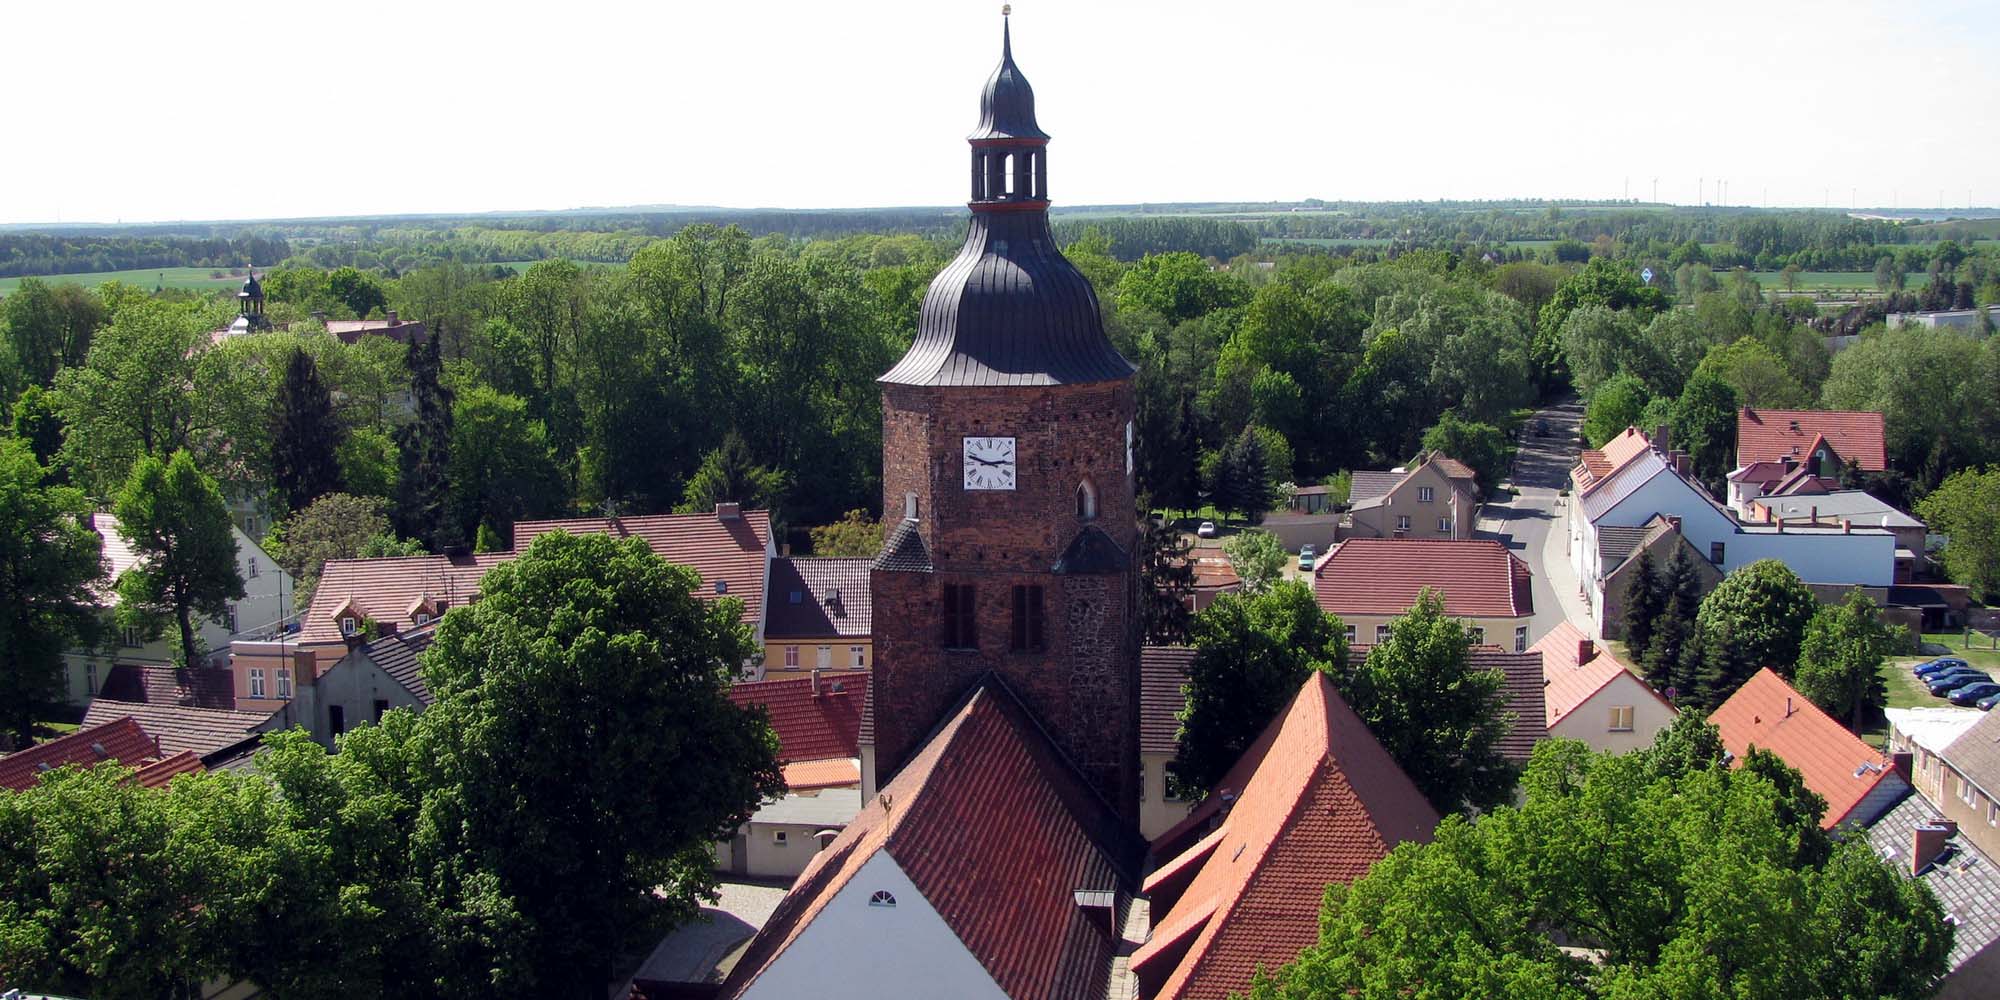 Die Kirchenschiffe im Vordergrund und der Turm, im Hintergrund die grüne Umgebung